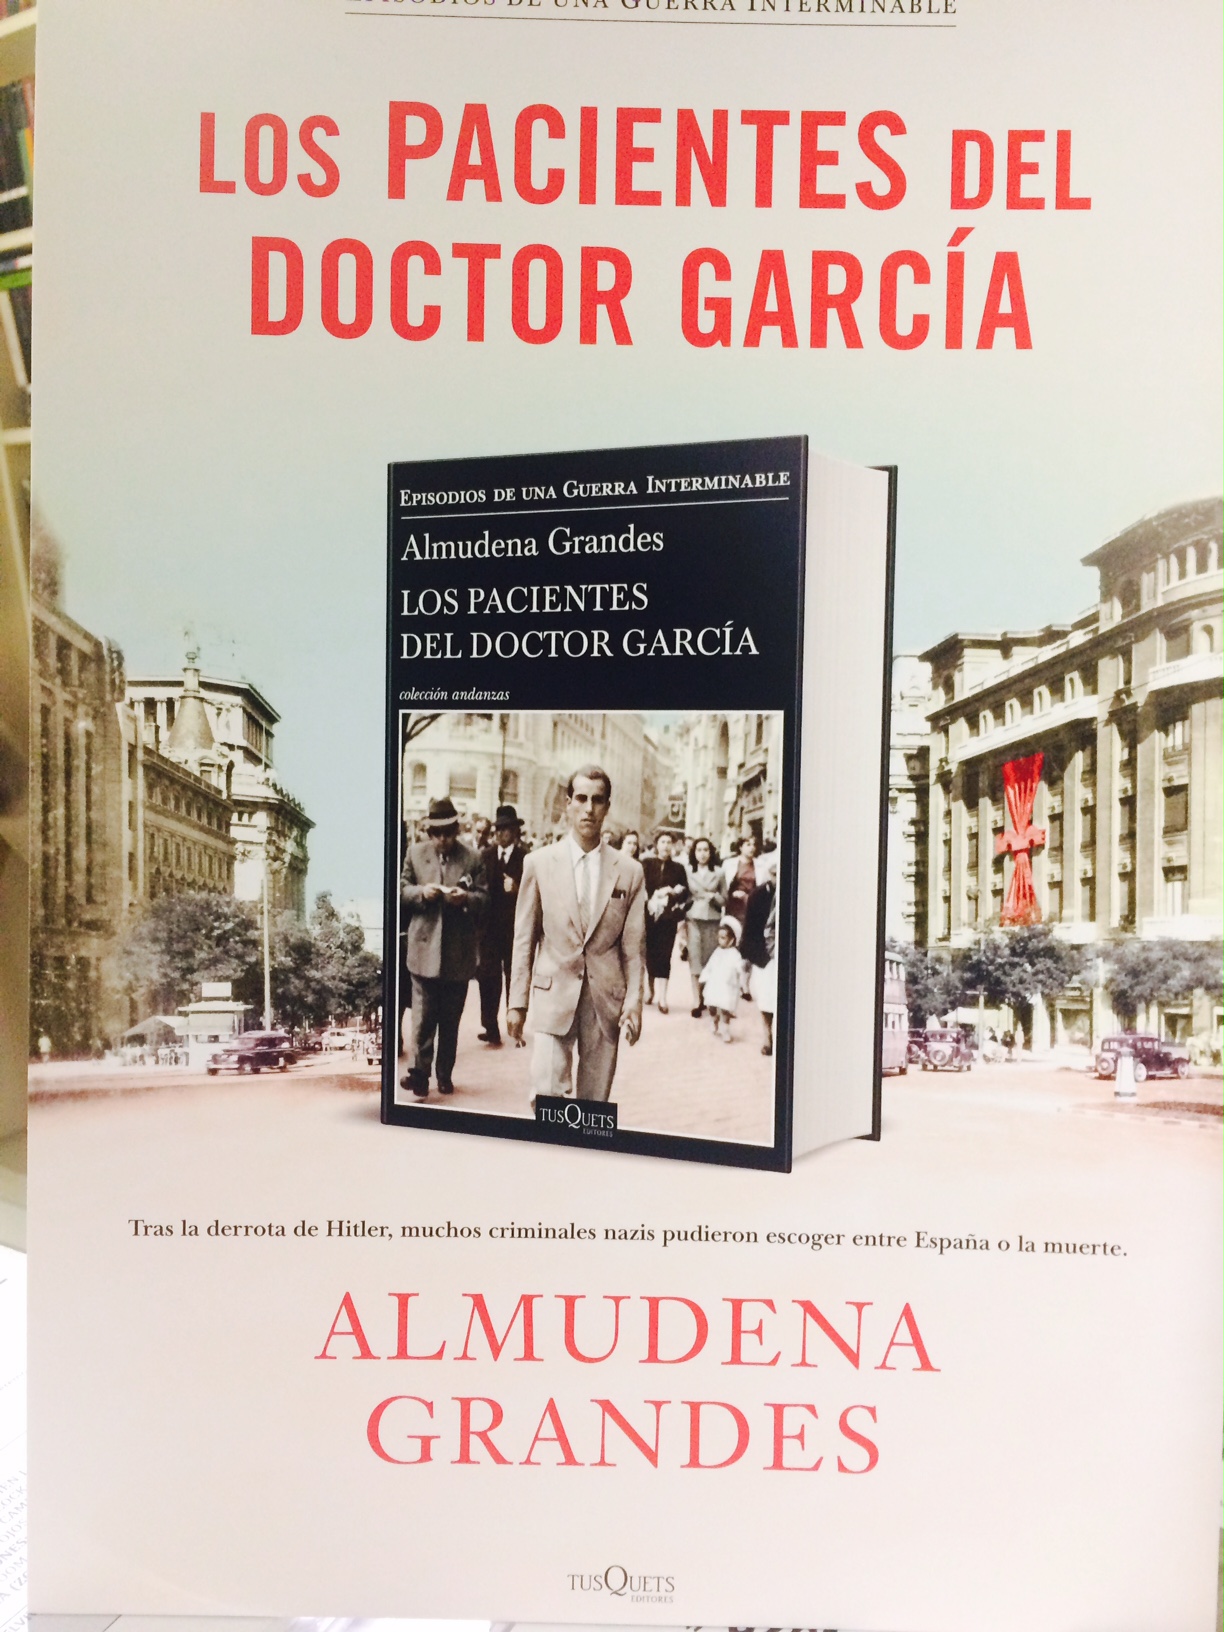 ALMUDENA GRANDES. Los pacientes del doctor García (Tusquets)